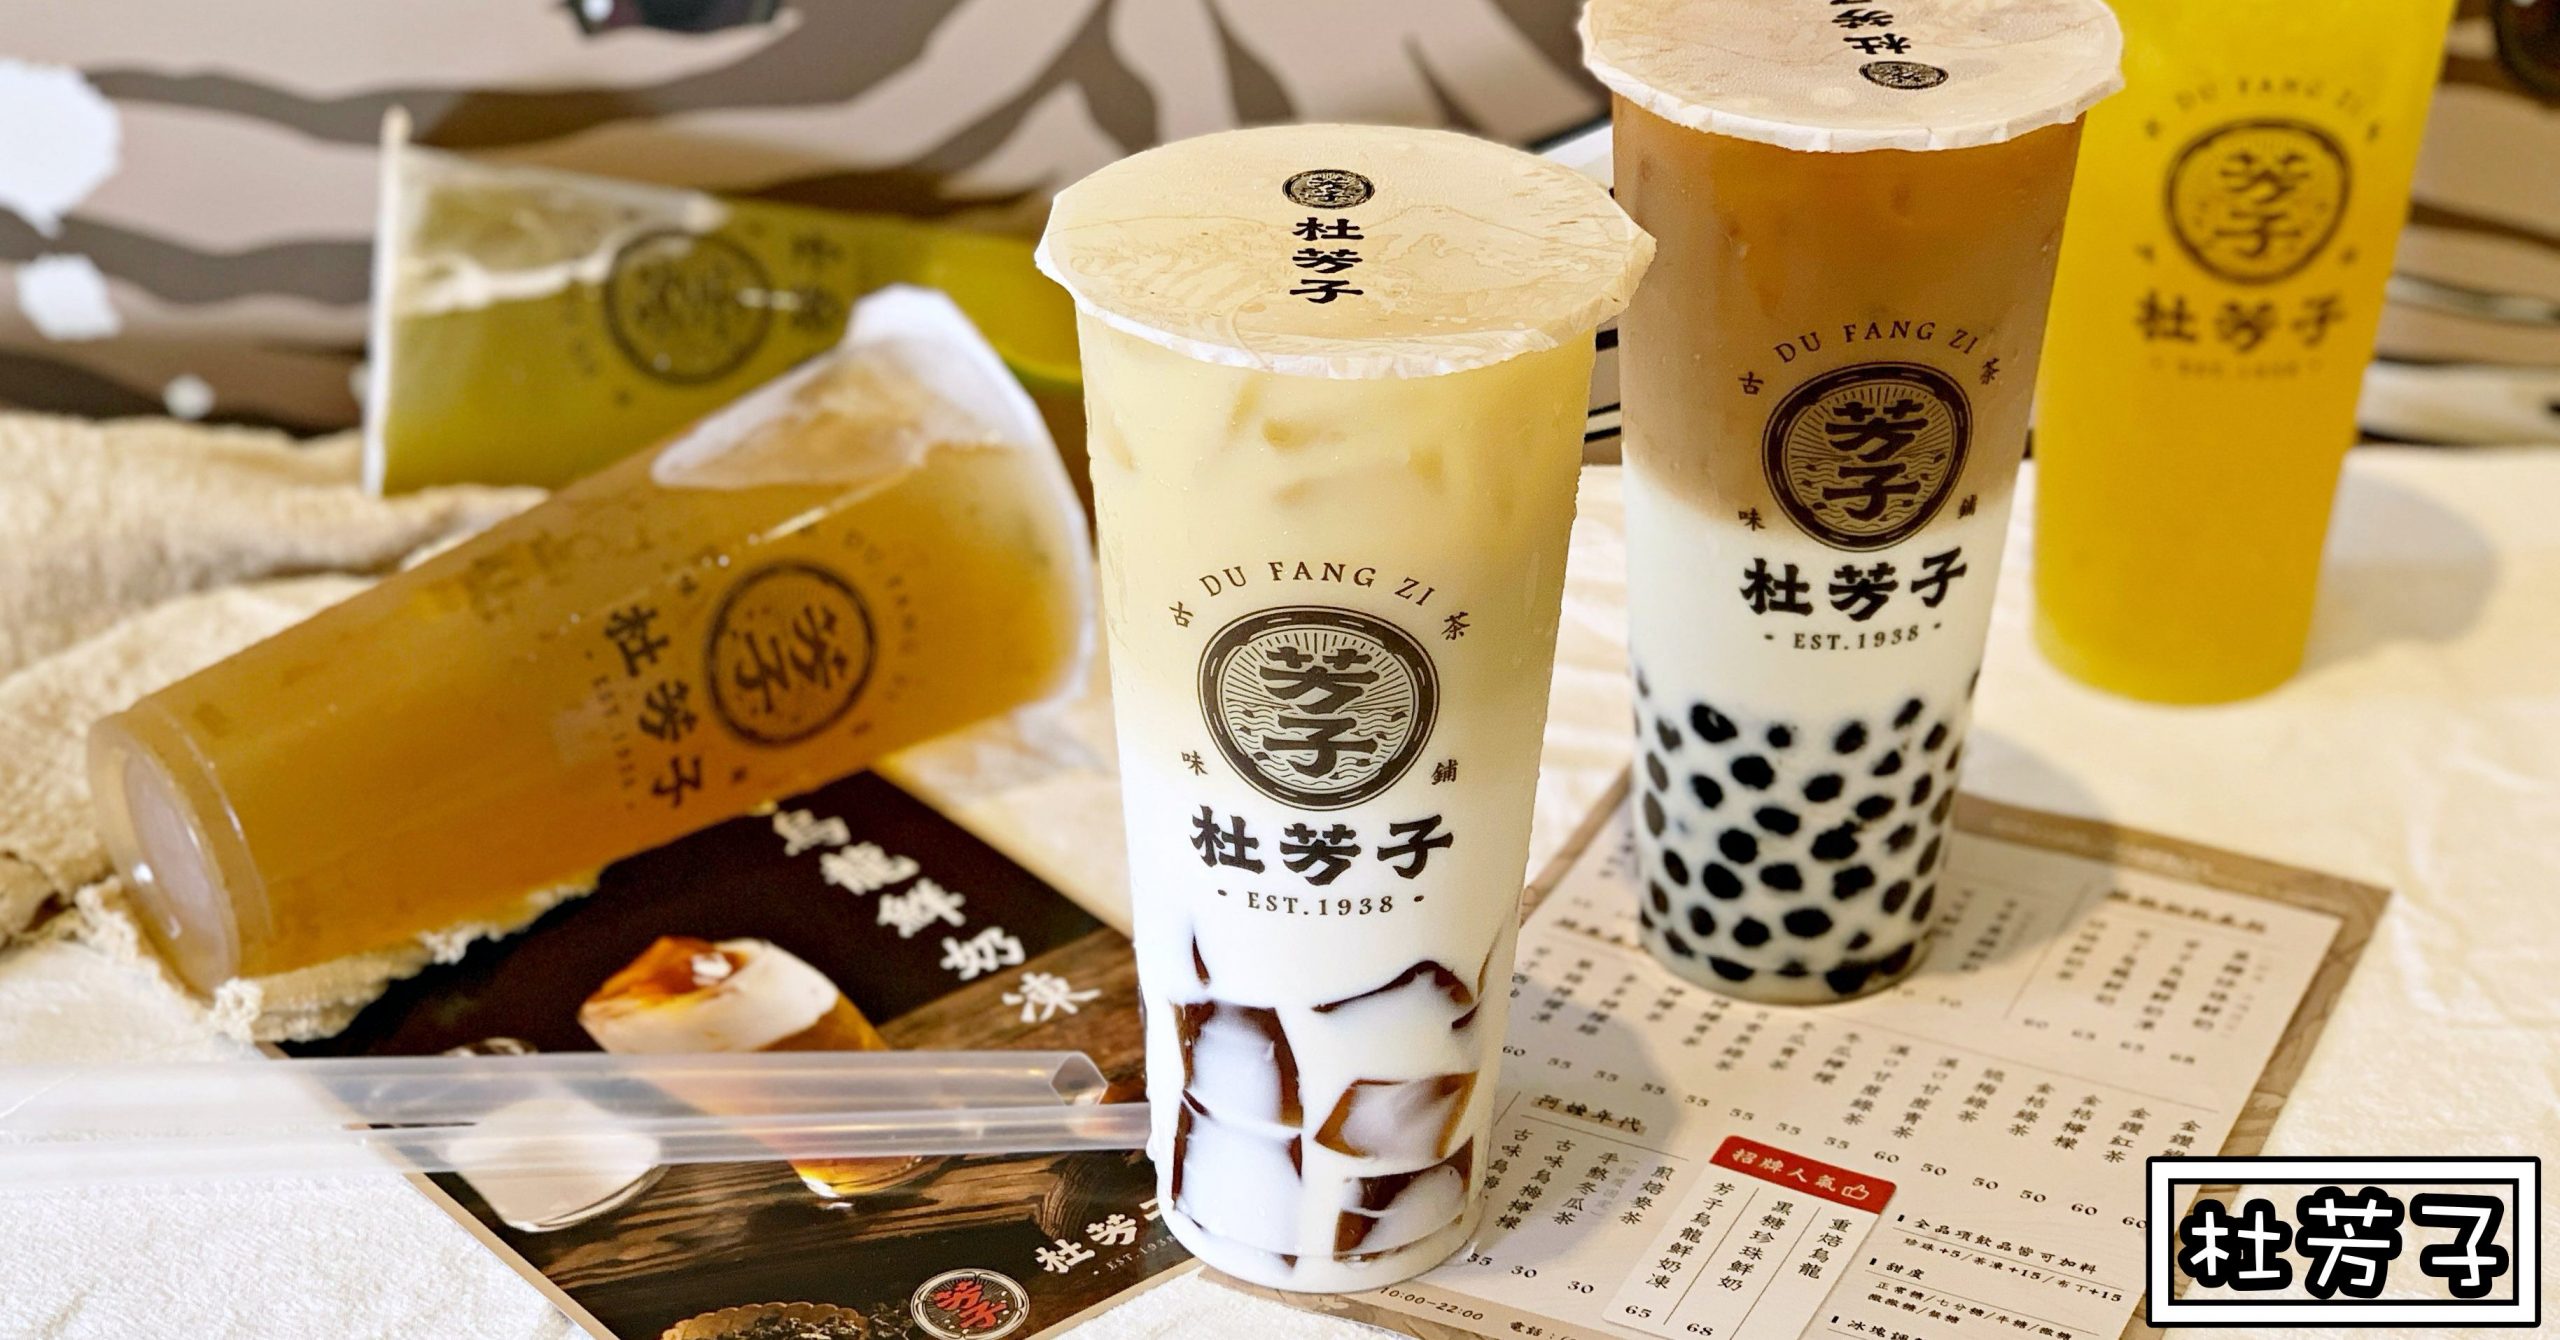 杜芳子|台北飲料推薦-大推茶凍烏龍鮮奶茶 禾香鮮奶入料 (菜單 推薦)